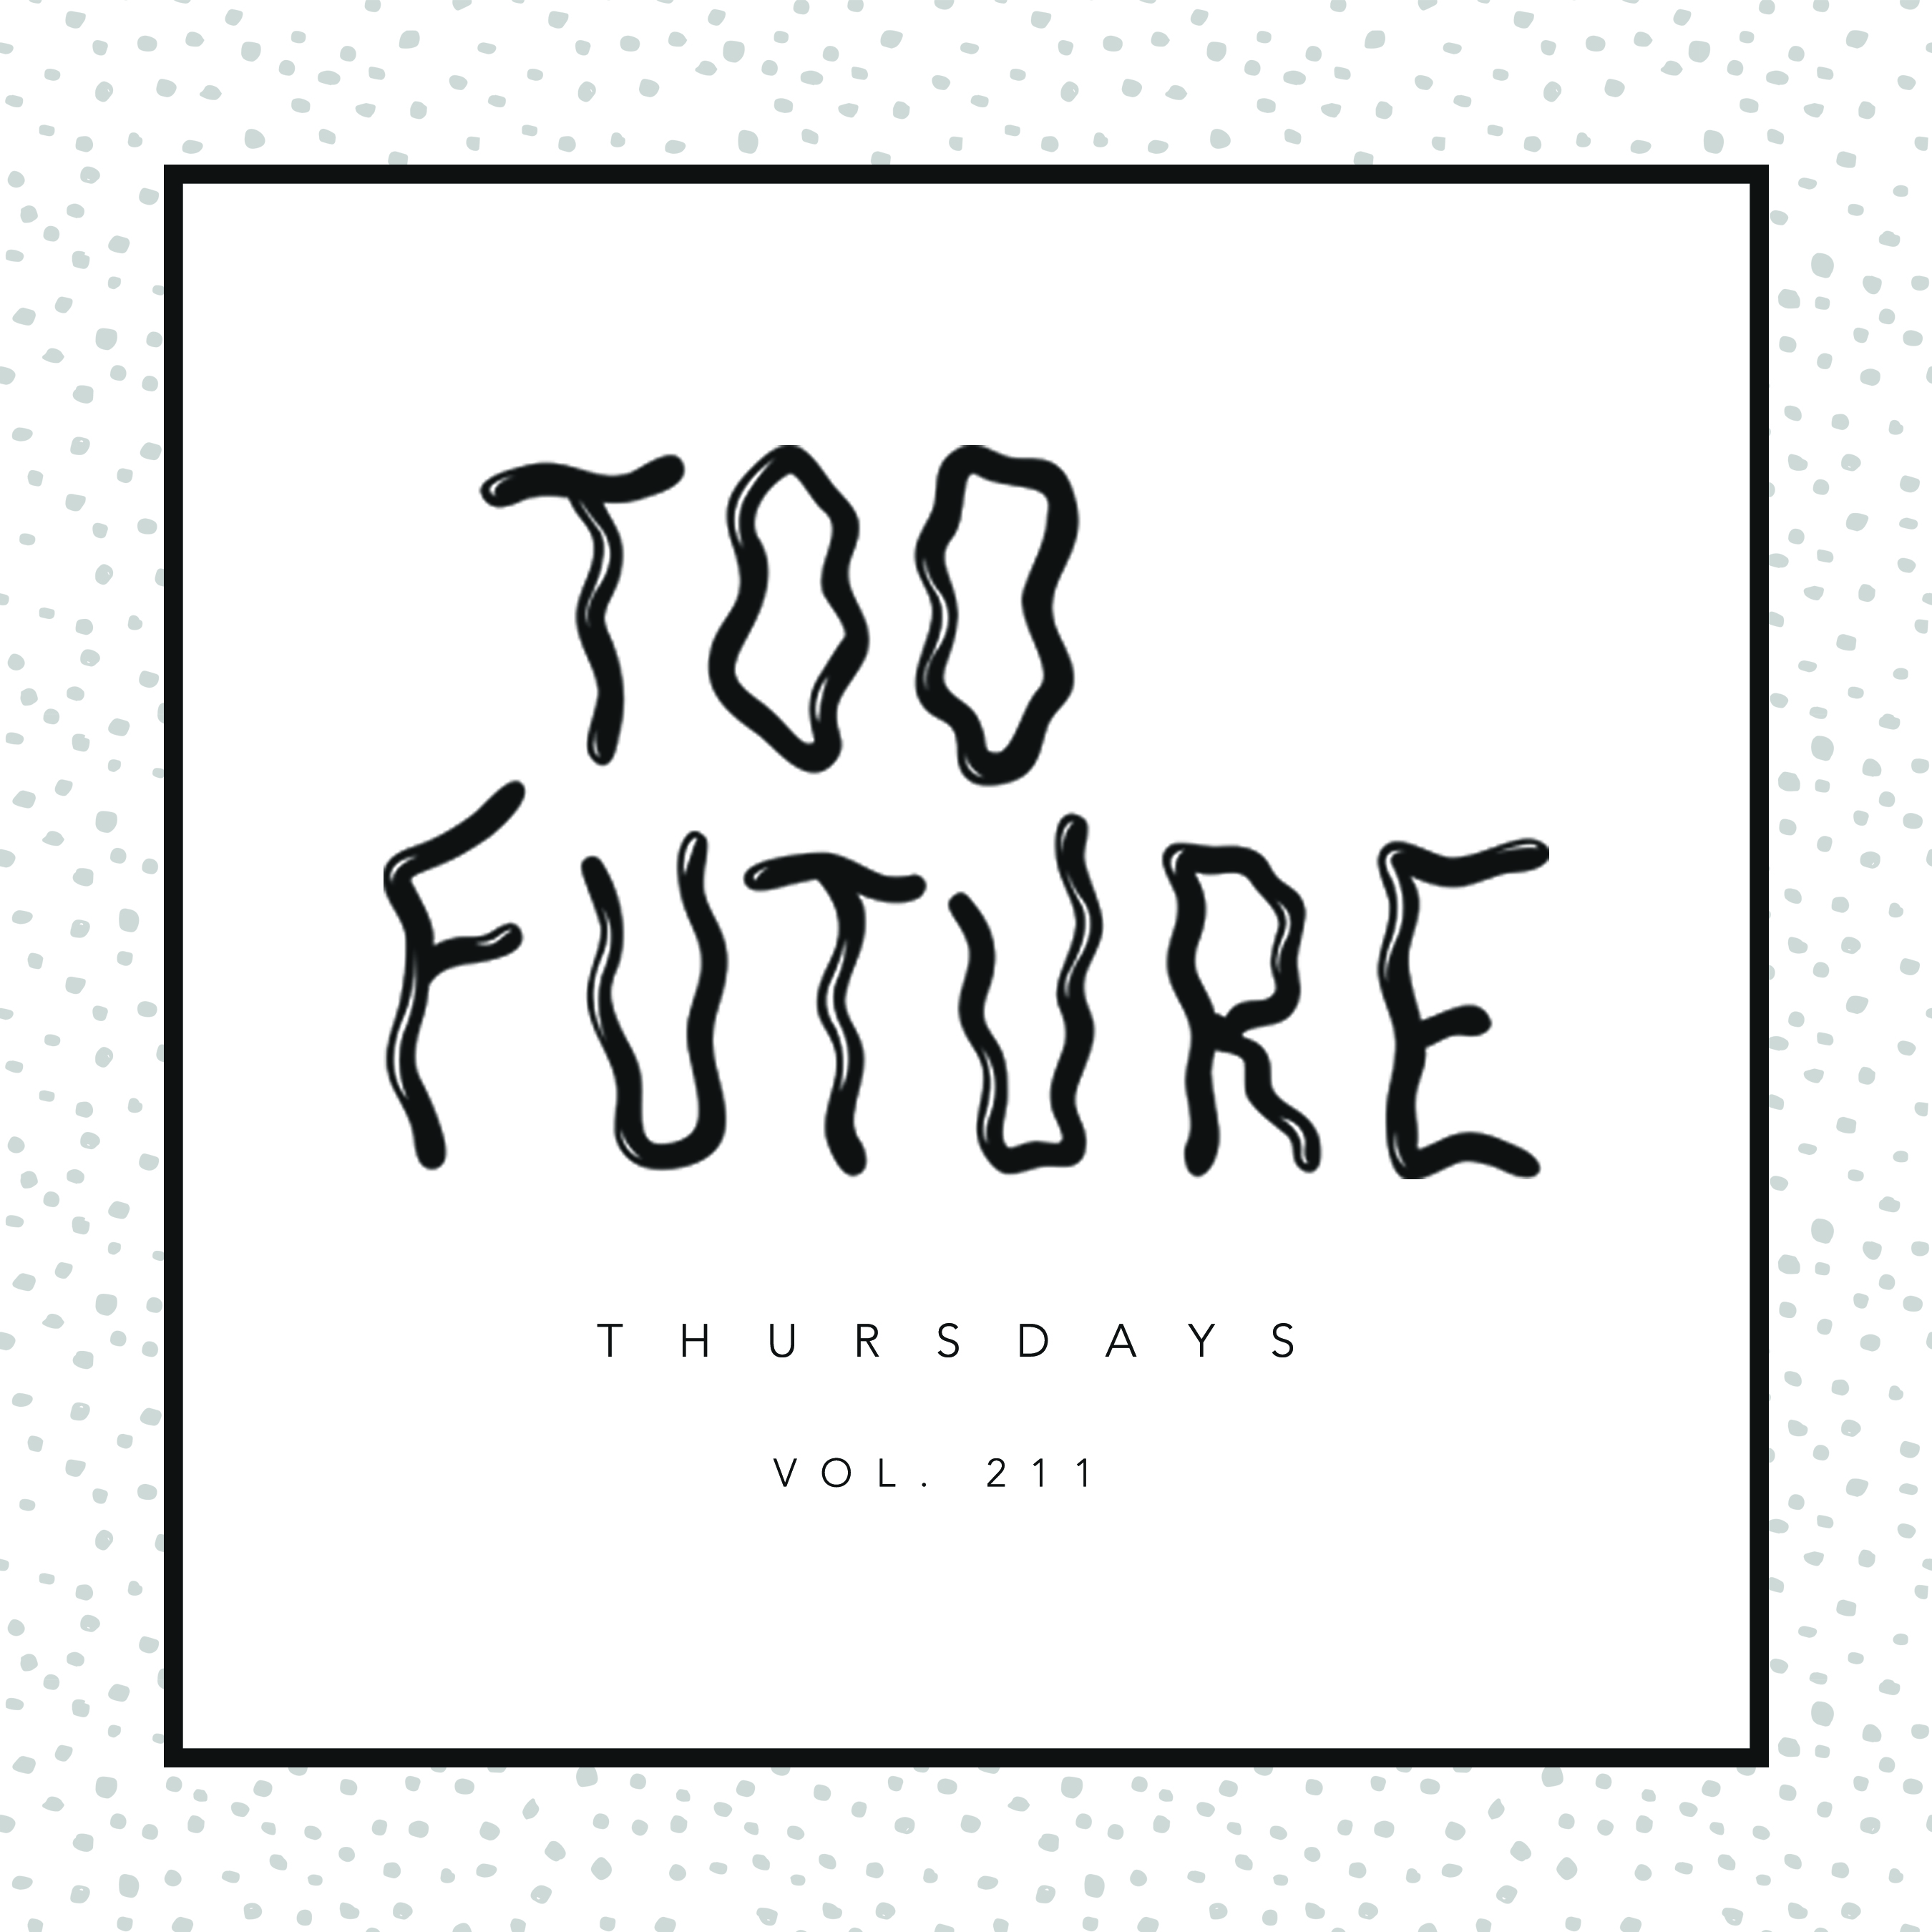 too-future-thursdays-vol-211